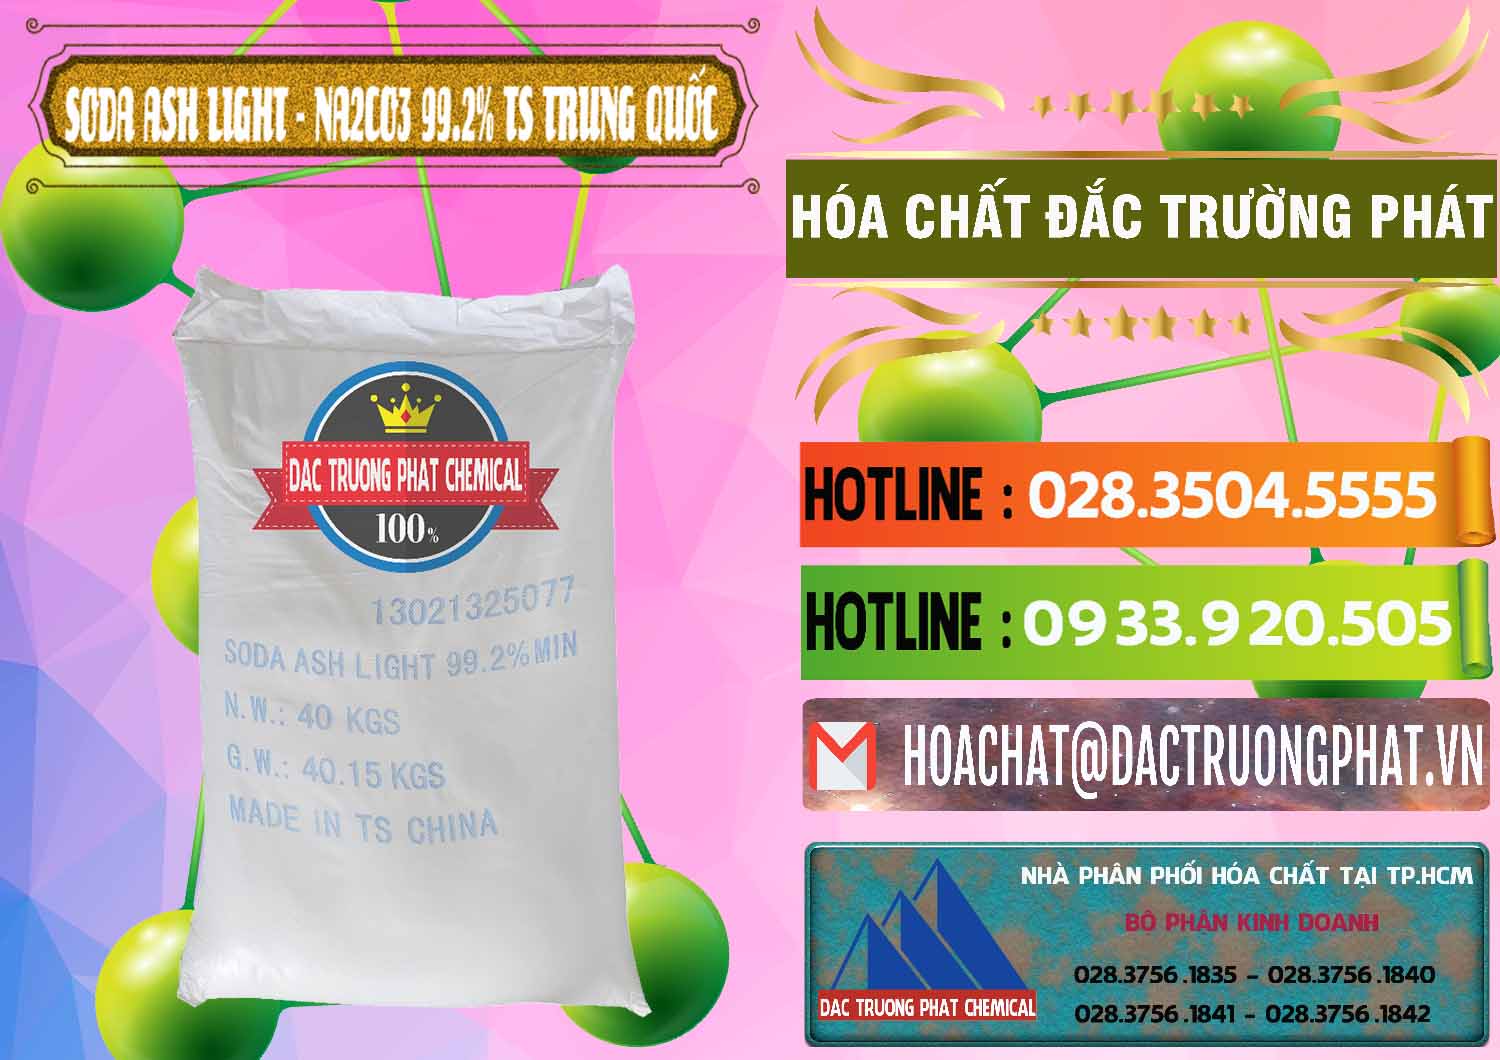 Cty chuyên cung cấp & bán Soda Ash Light - NA2CO3 TS Trung Quốc China - 0221 - Cung cấp ( bán ) hóa chất tại TP.HCM - cungcaphoachat.com.vn